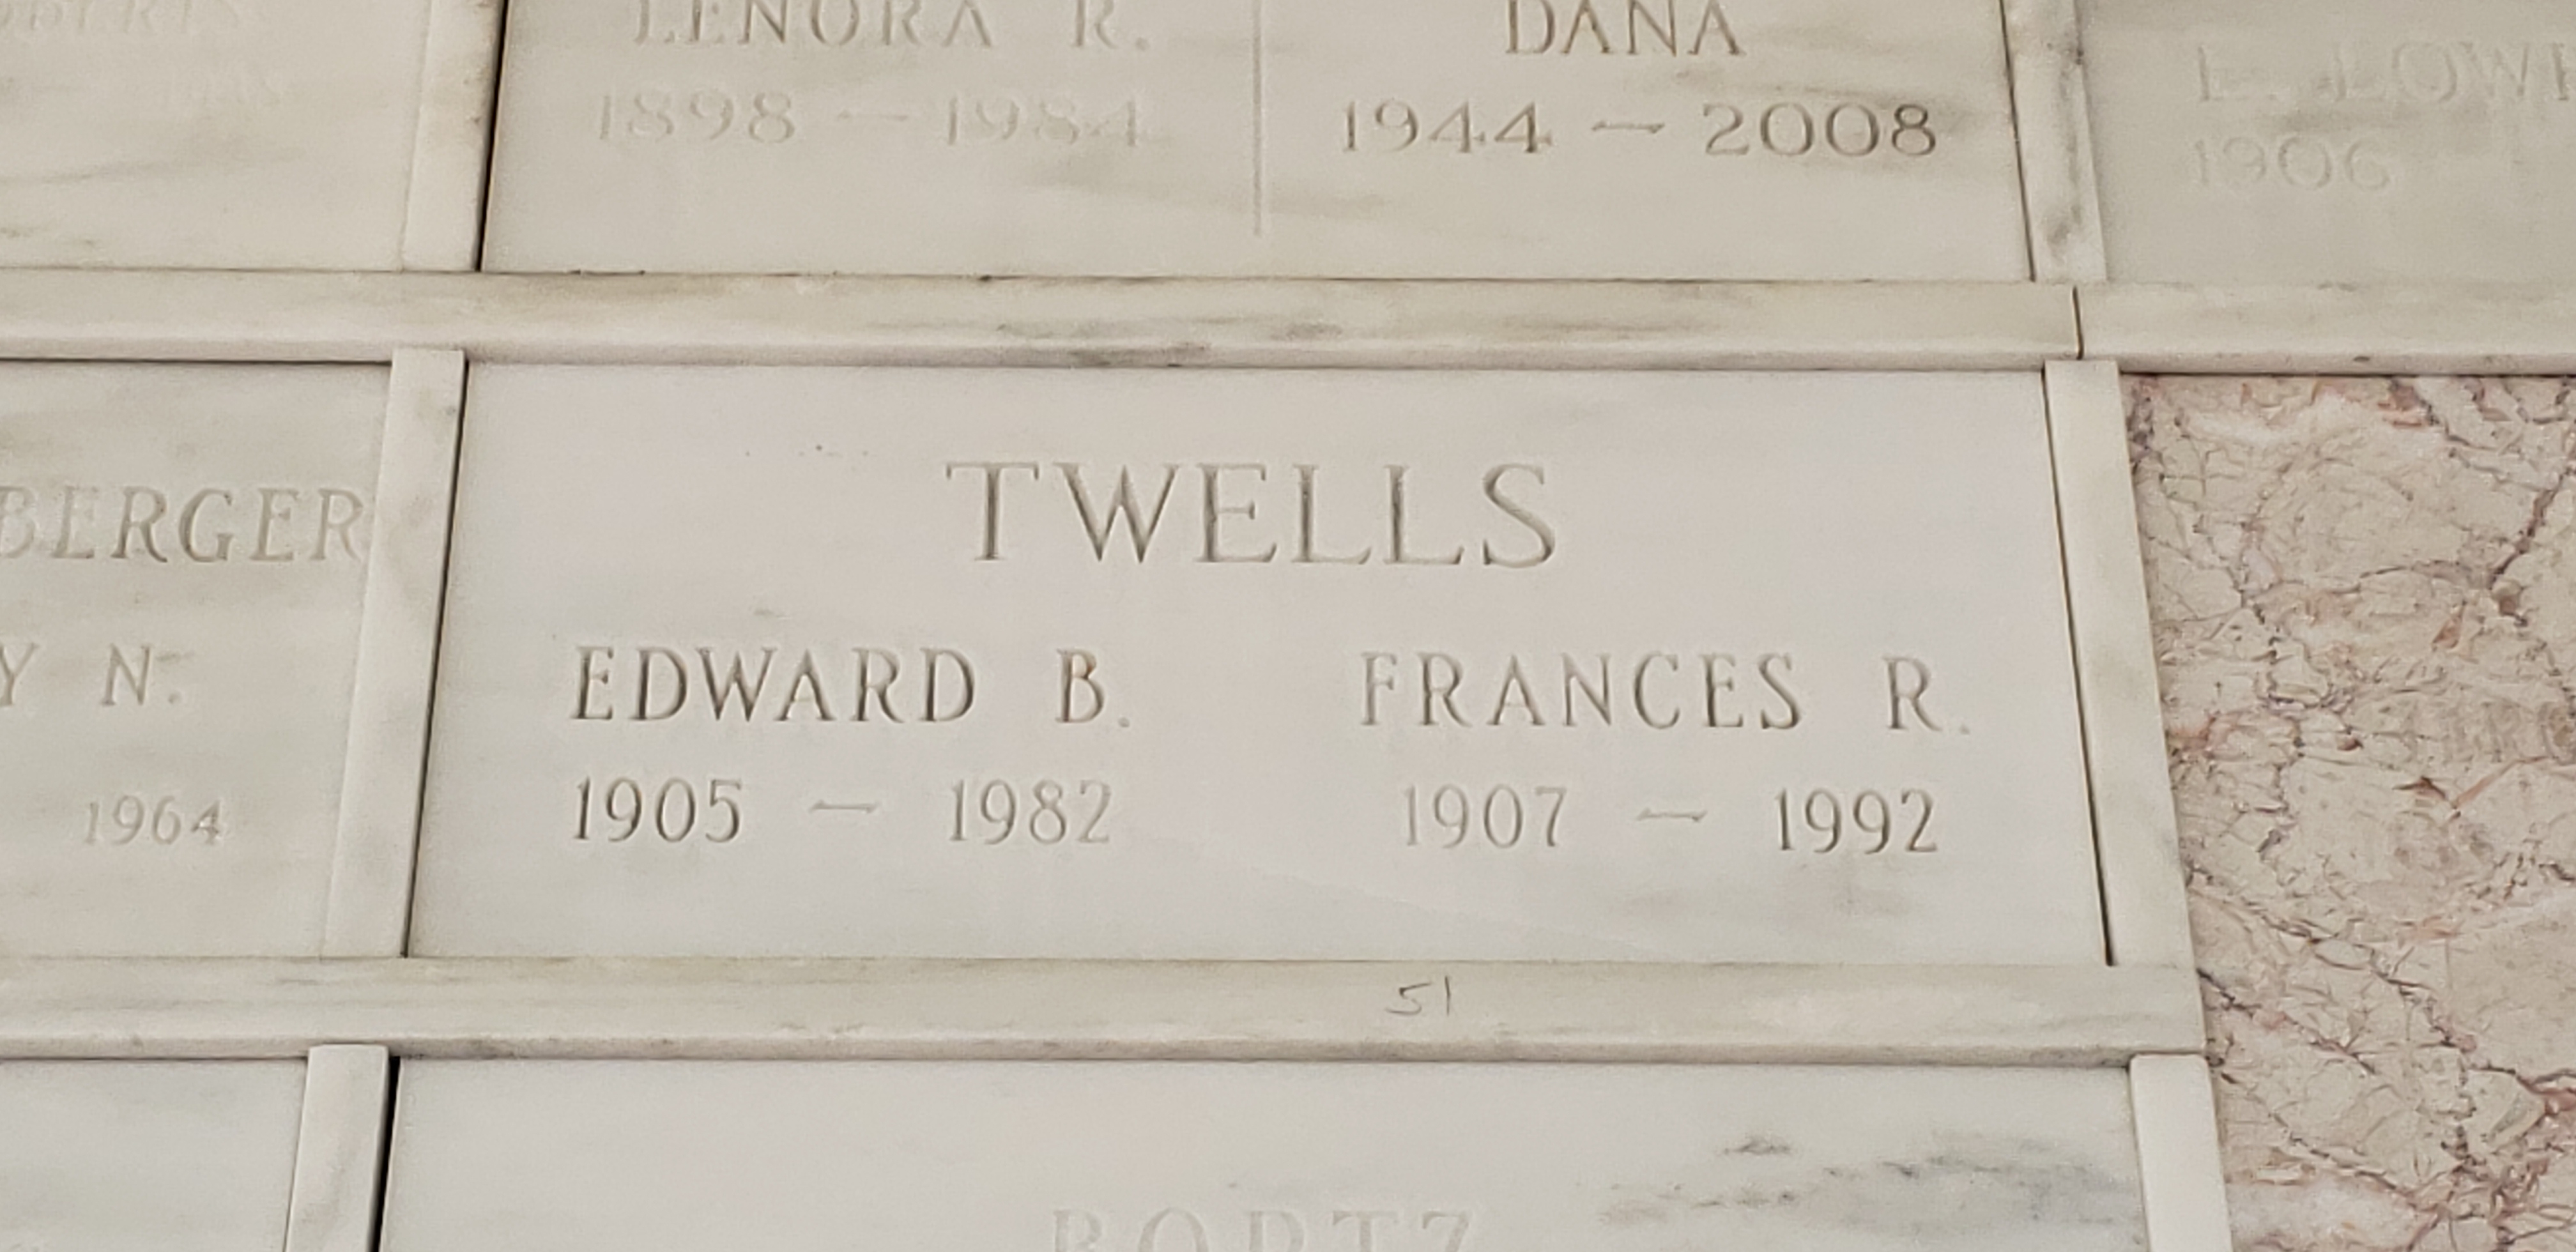 Edward B Twells